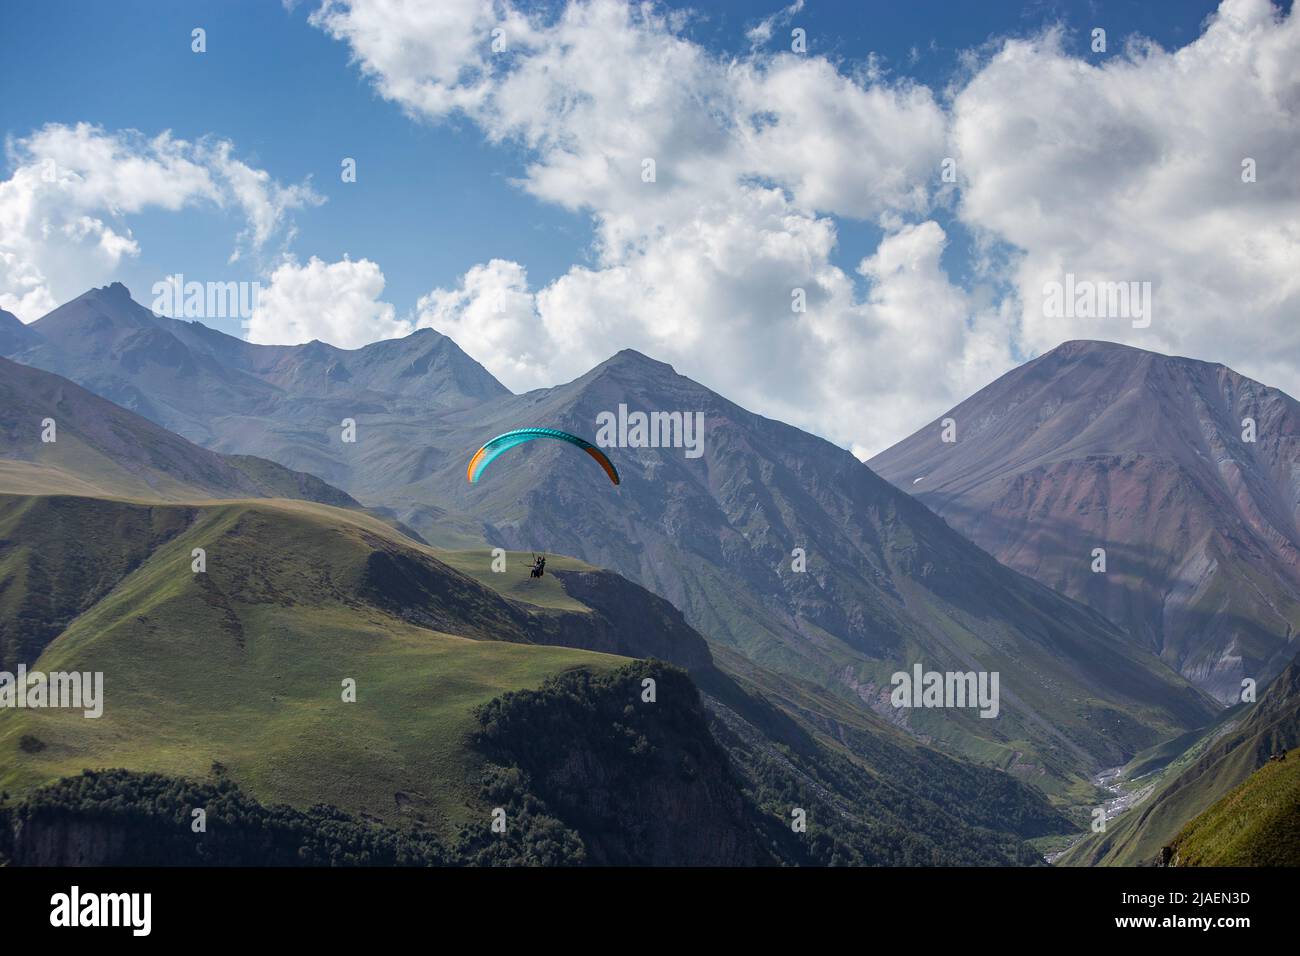 Ein Mann auf einem Gleitschirm macht ein Selfie. Bergschlucht mit grünen Hängen, ein Fallschirm mit Menschen fliegt über die Klippe. Wunderschöne Aussicht auf die Panoramalandschaft Stockfoto